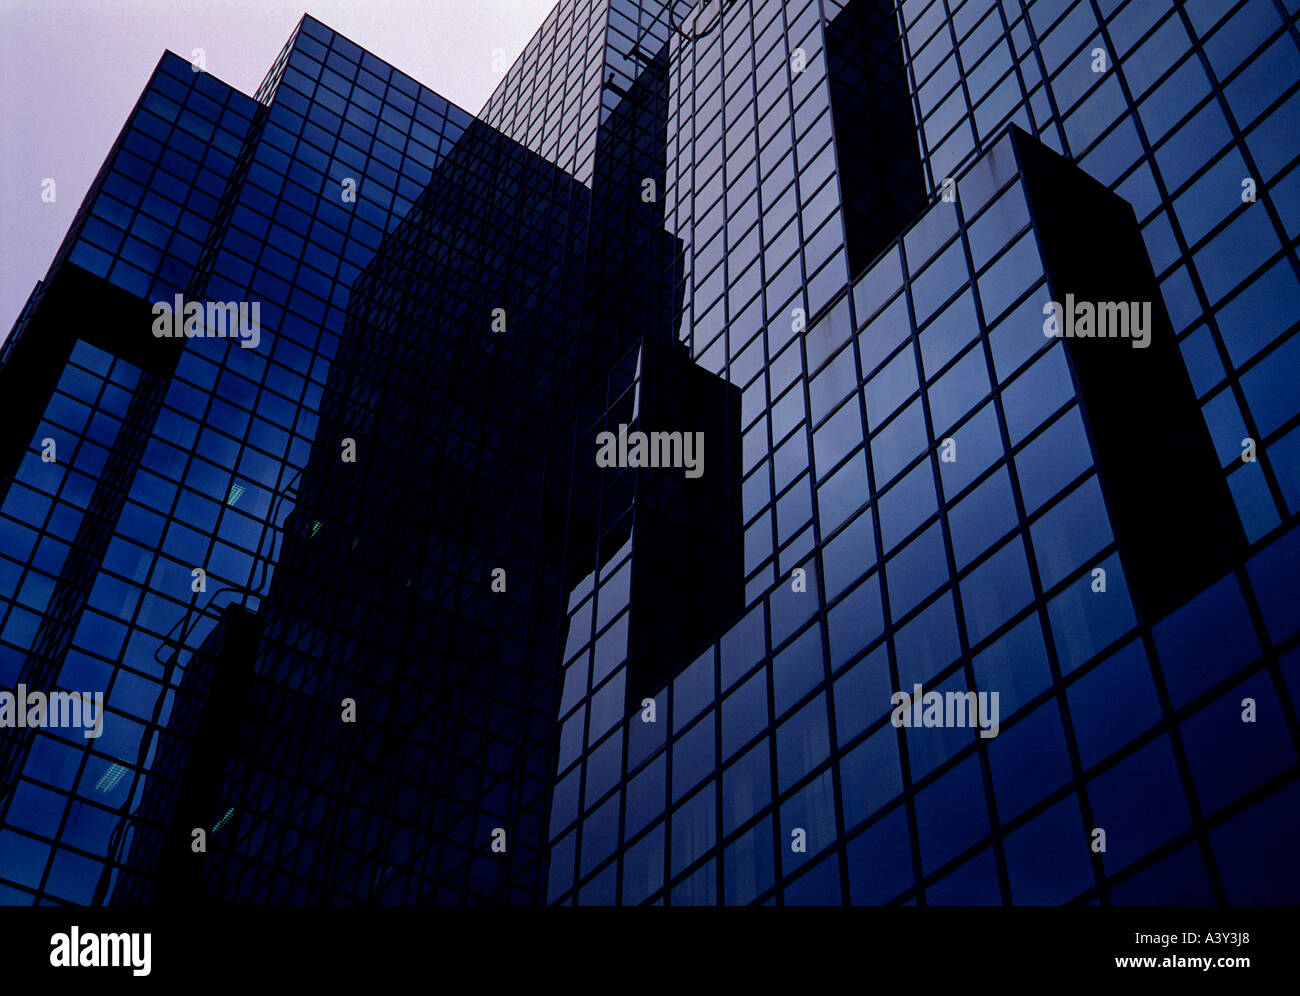 Glasfassaden am Abend Stadt London England Großbritannien redaktionellen Gebrauch Stockfoto